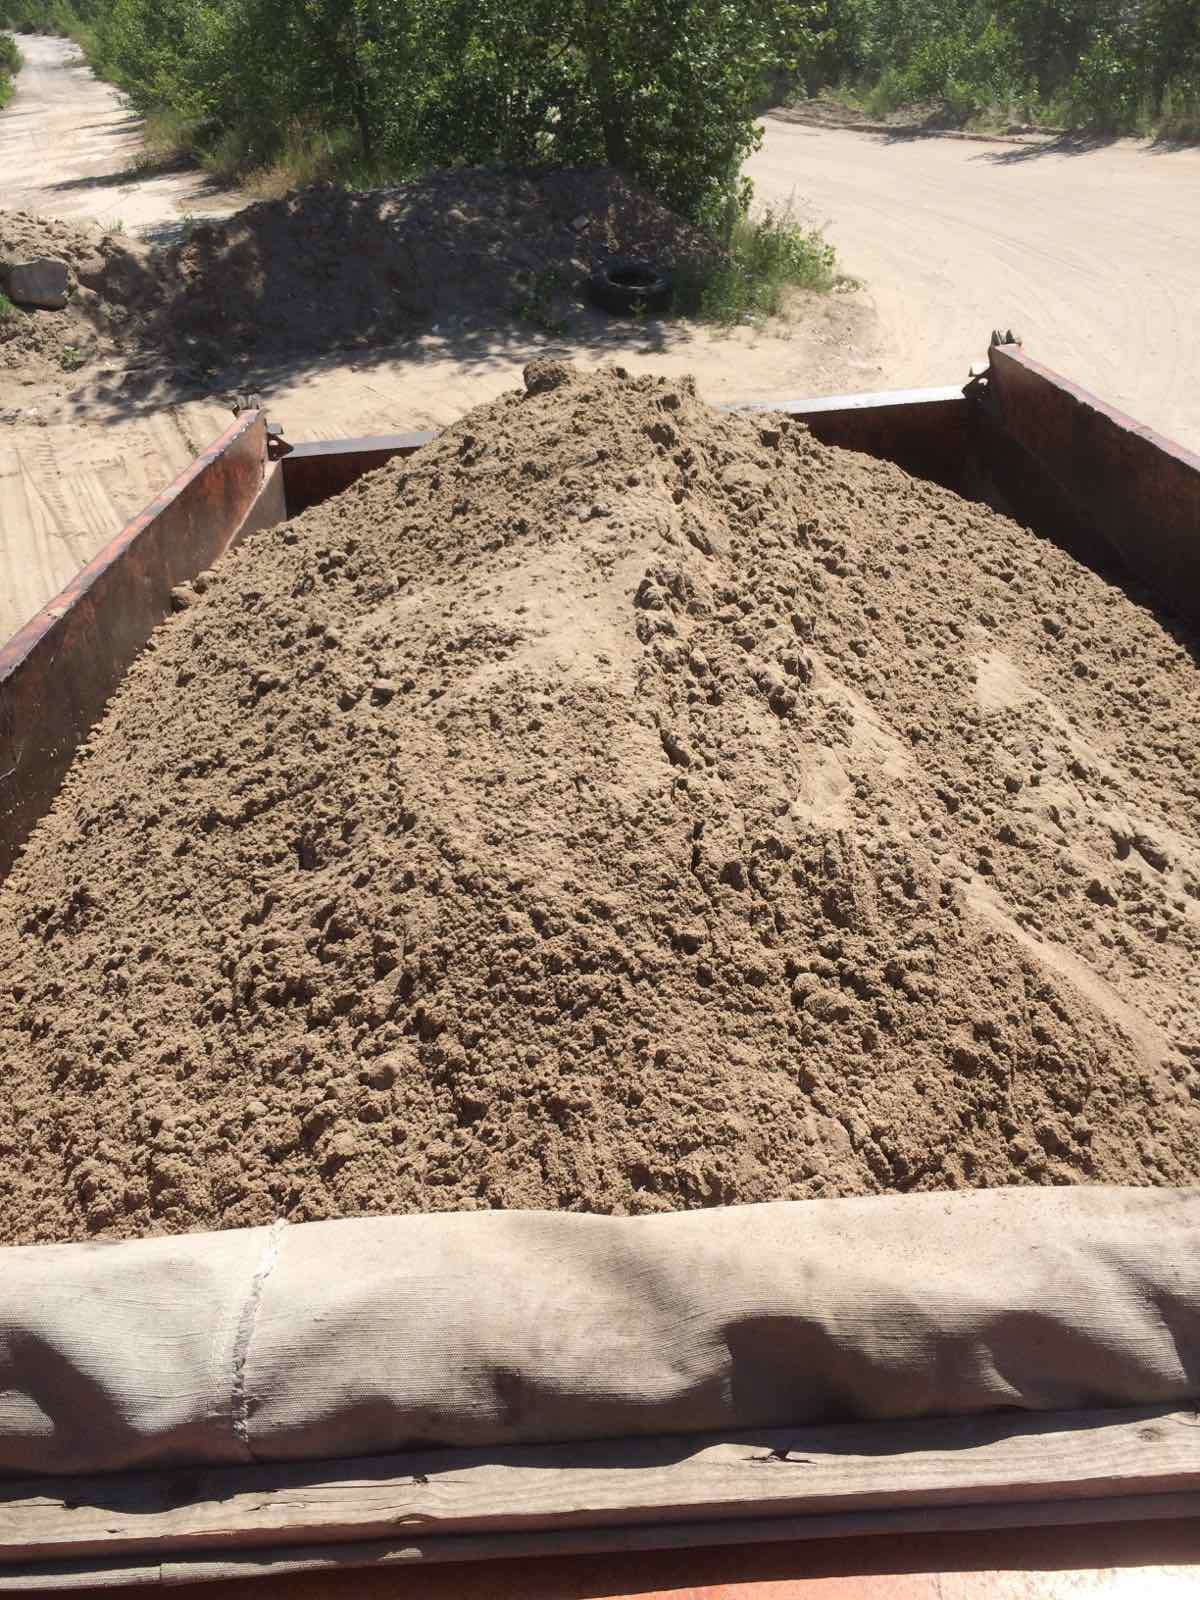 10 тонн песка в кубах